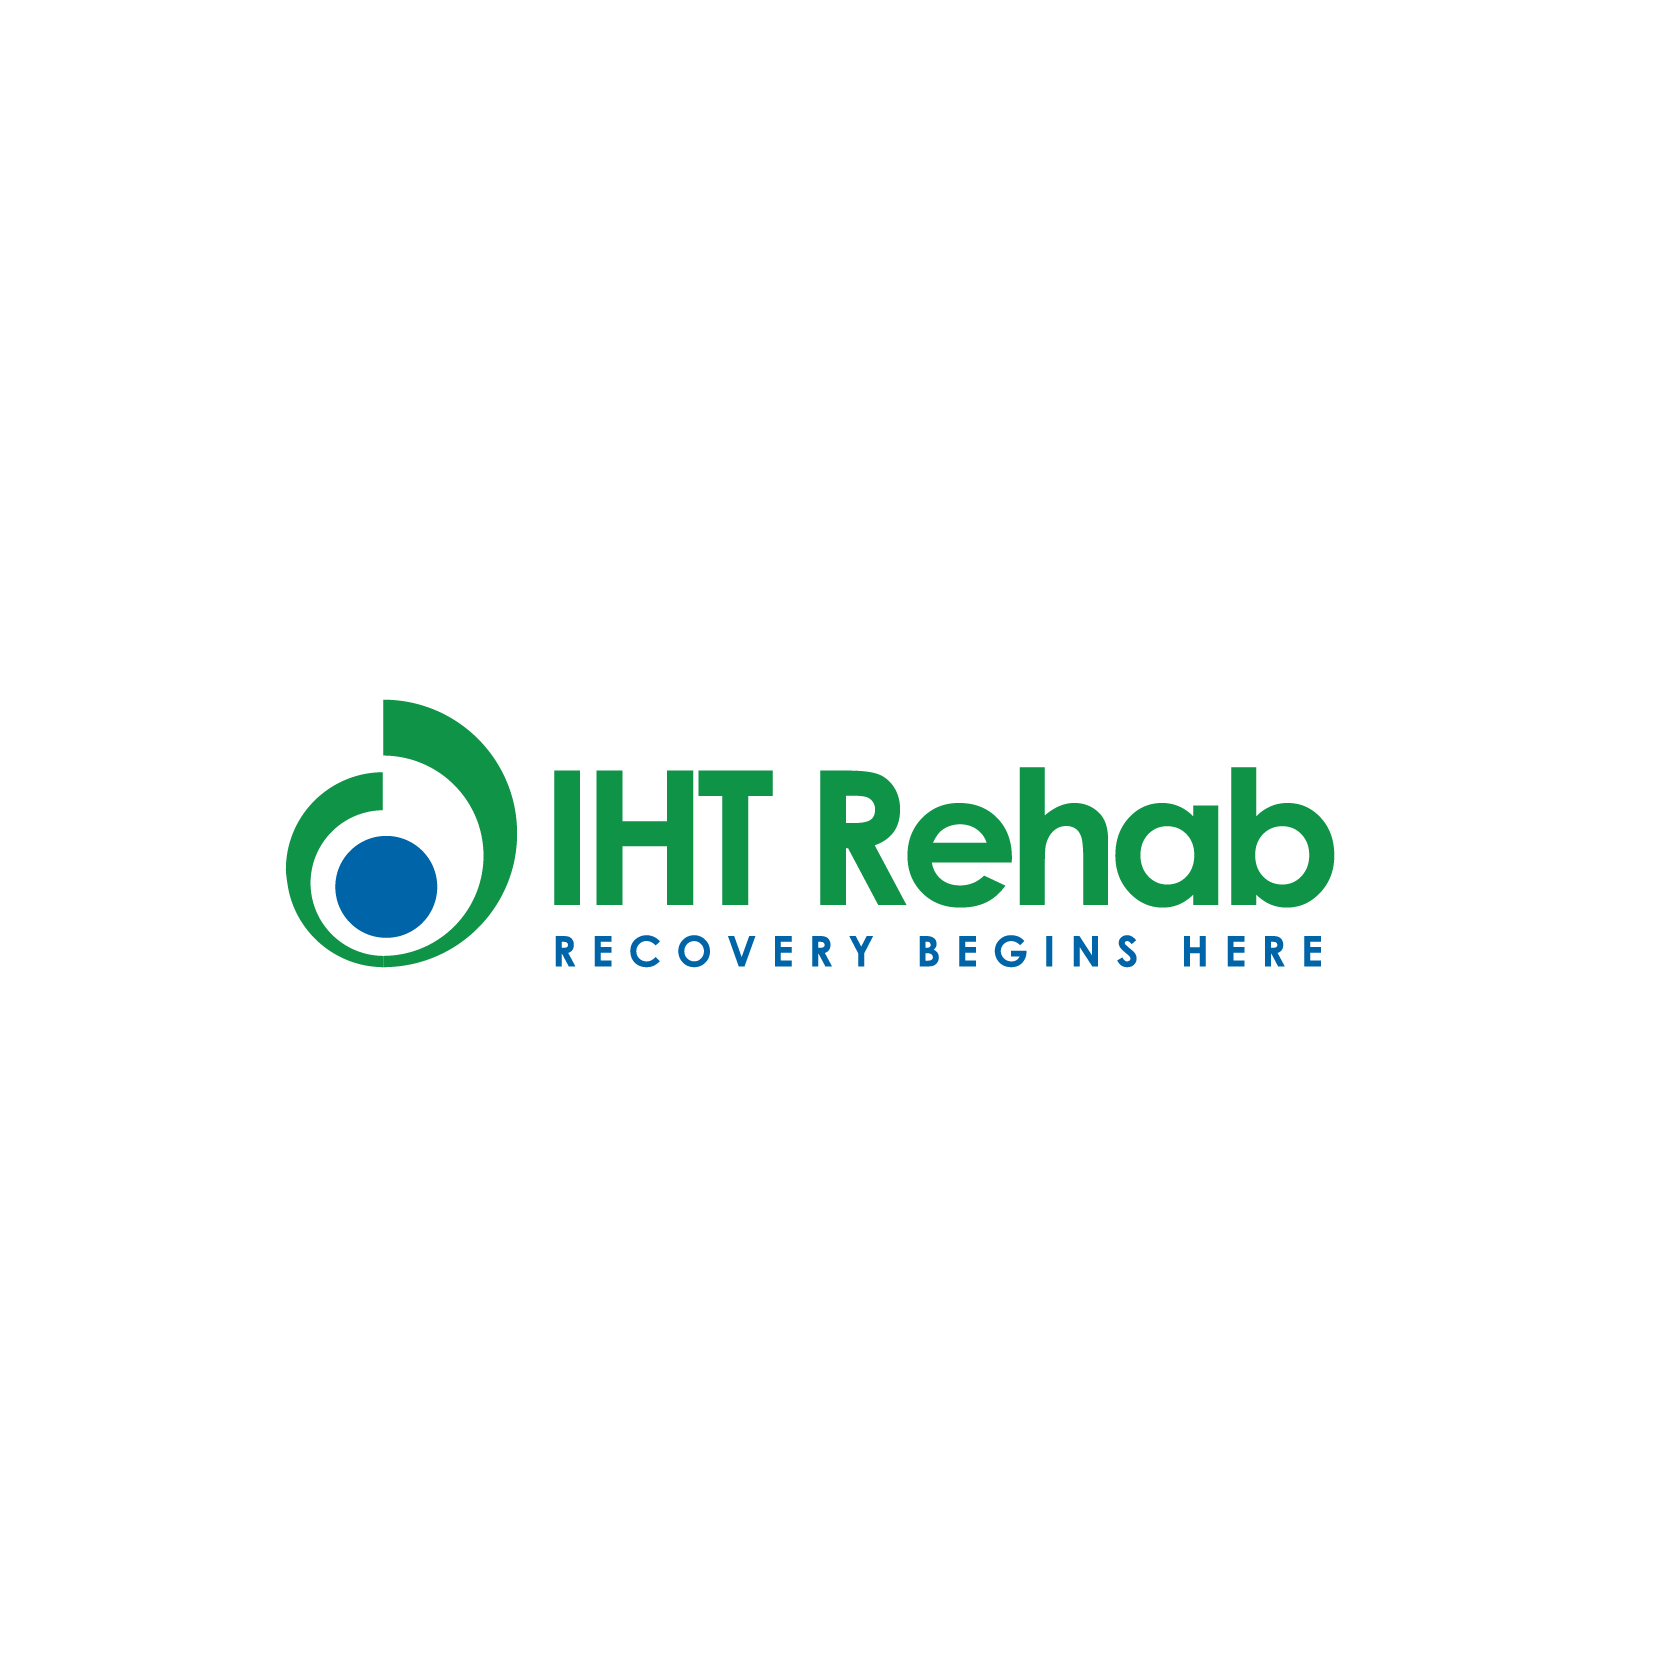 IHT-Rehab-logo